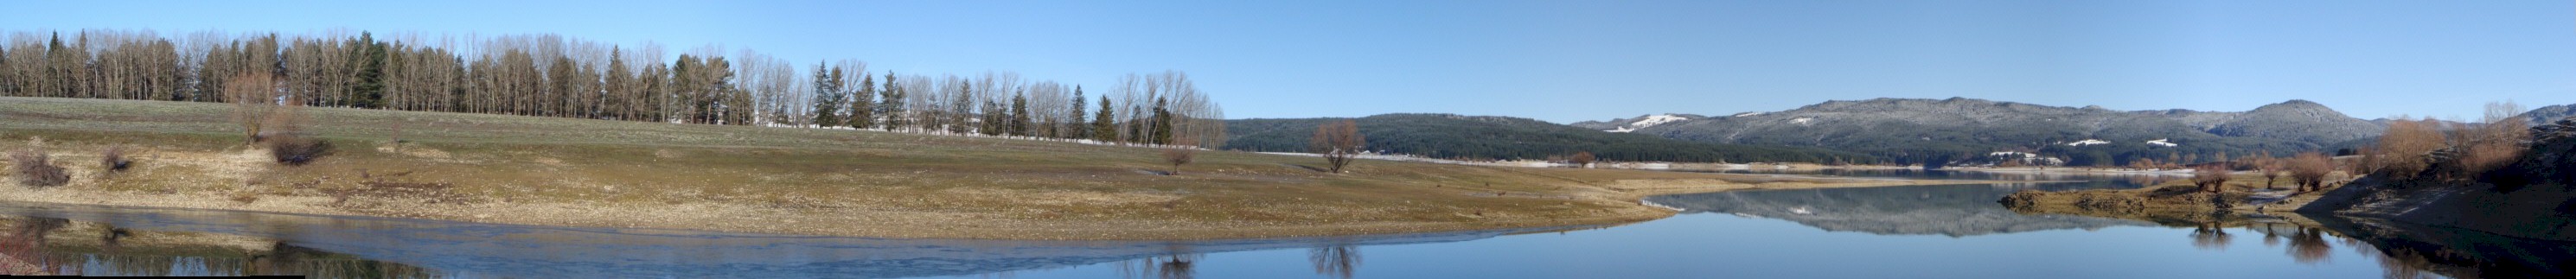 lago cecita